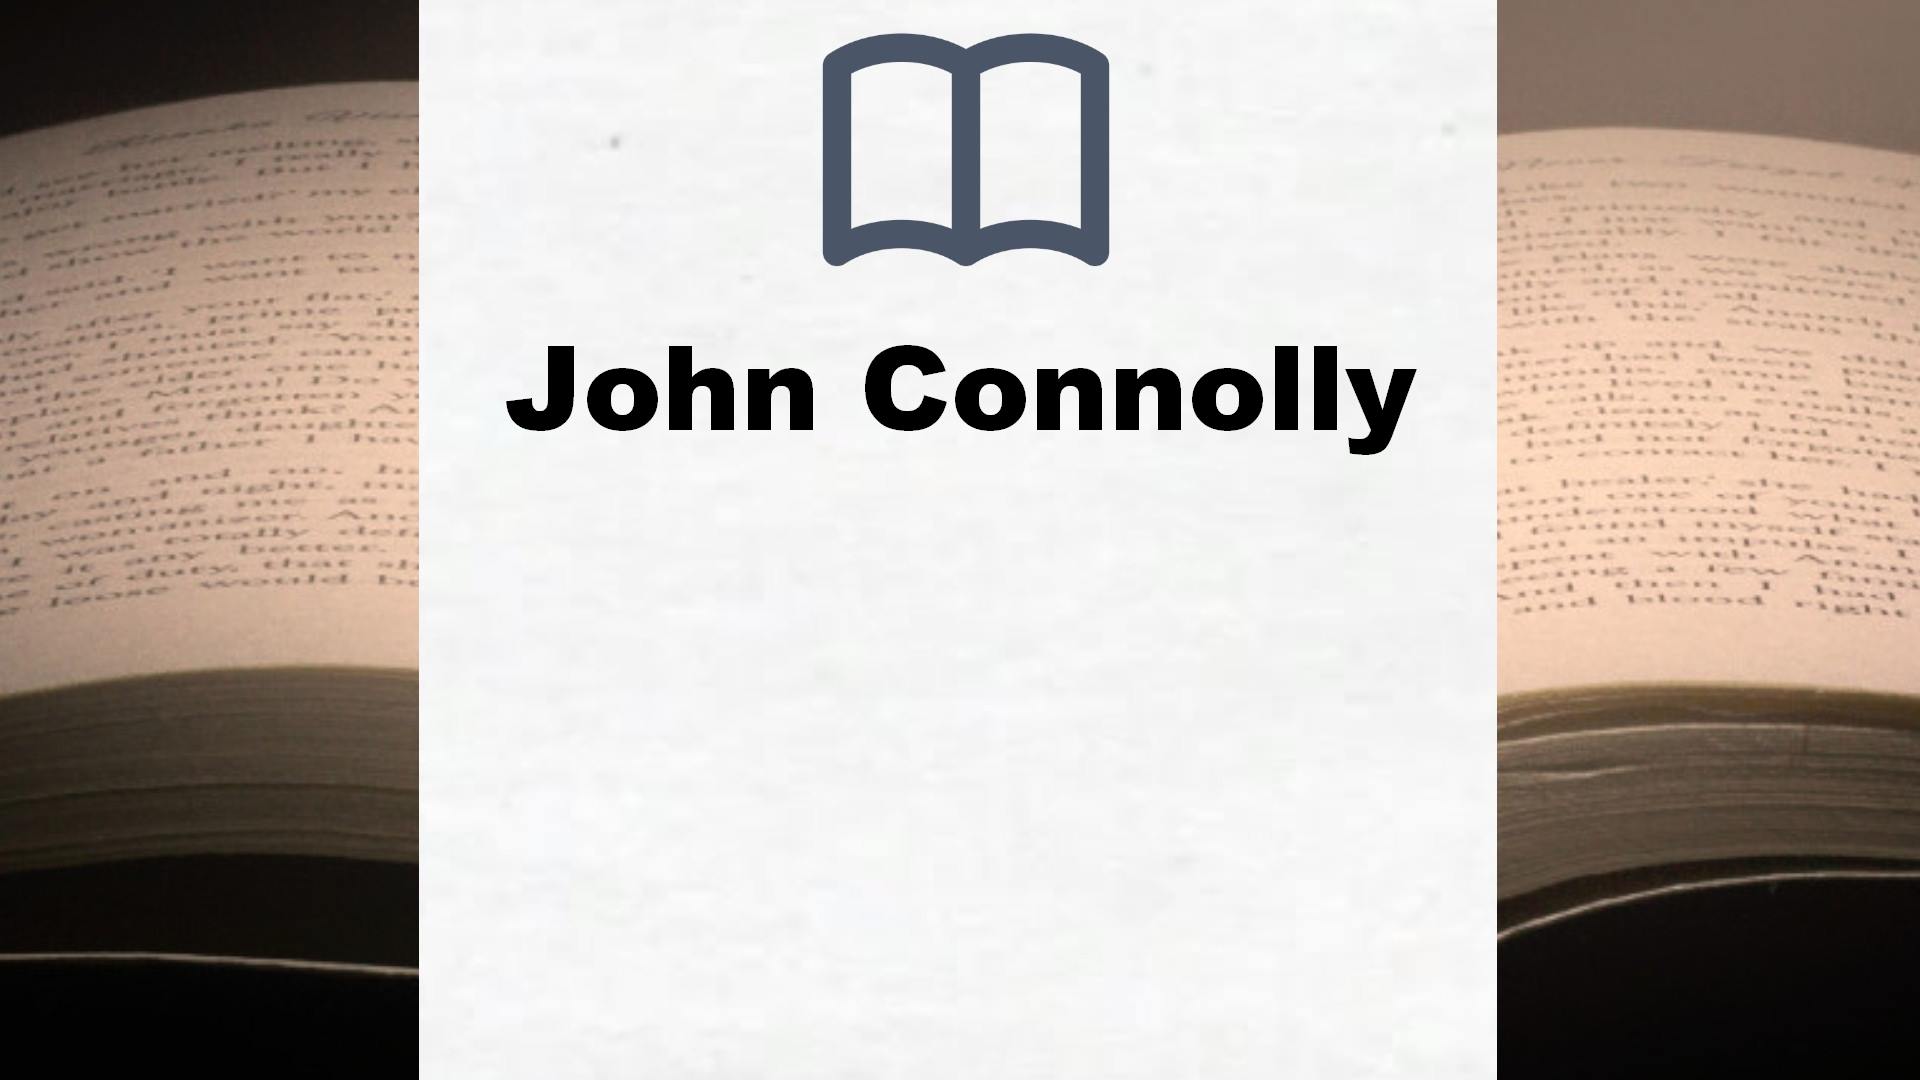 Libros John Connolly